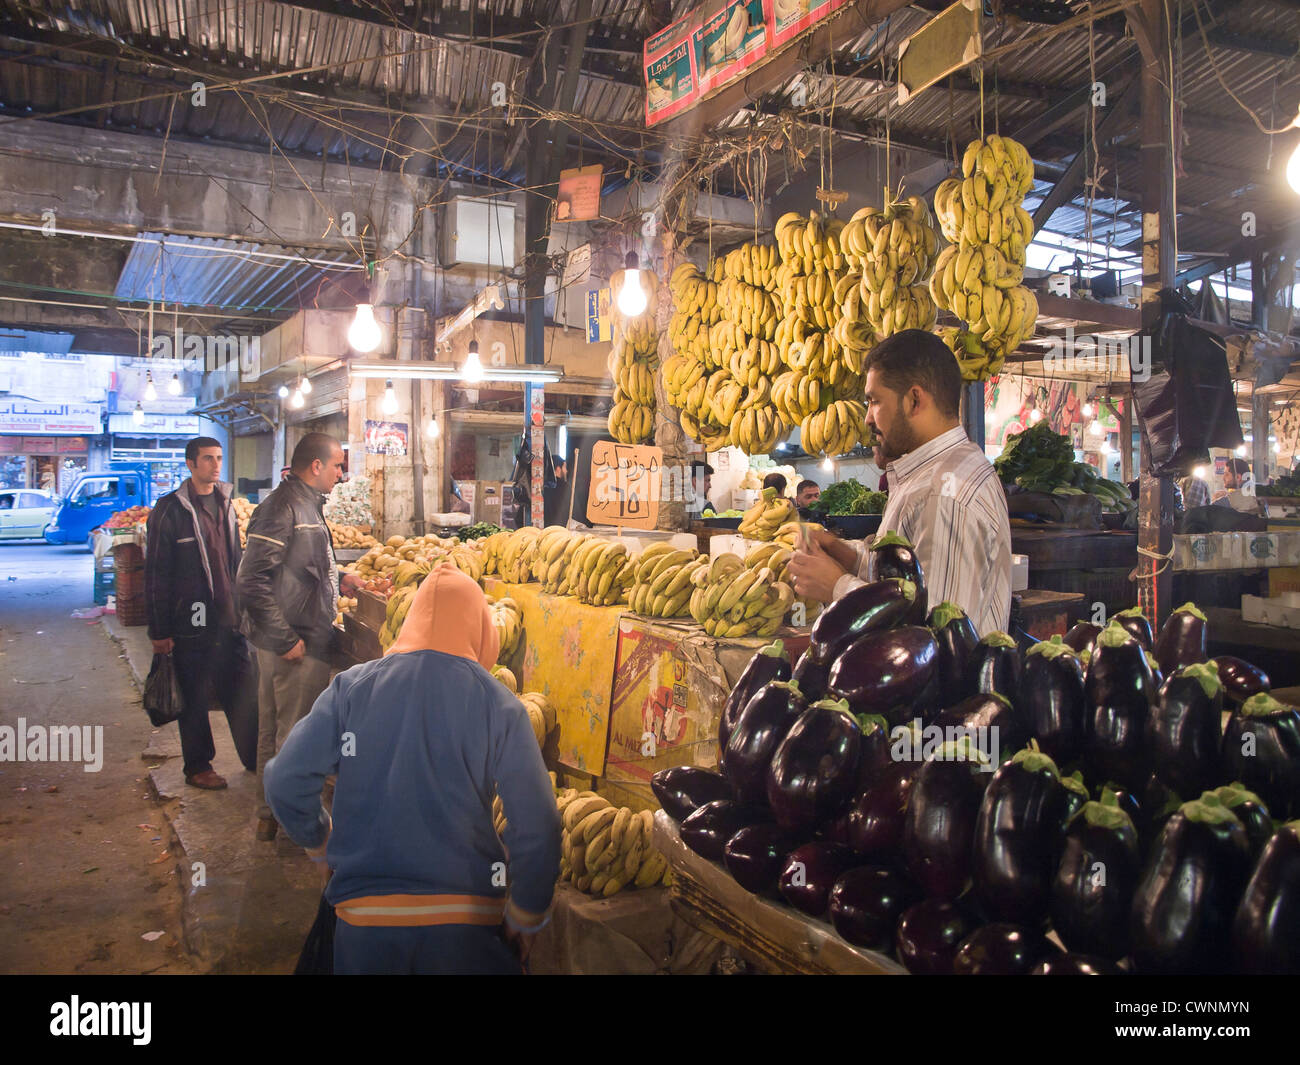 Le marché central couvert au centre-ville d'Amman en Jordanie est pleine de vie et de biens pour tous les goûts, ici l'aubergine et les bananes Banque D'Images